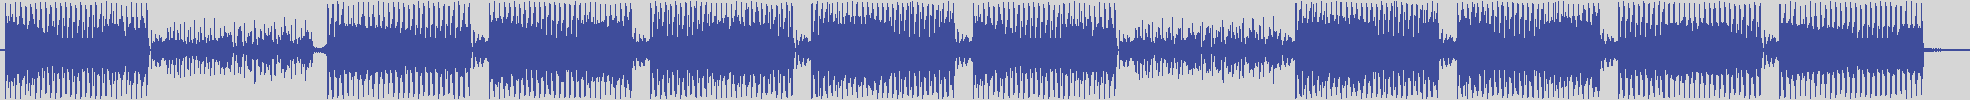 nf_boyz_records [NFY053] 3000 Volt - Talken [Maxy Mix] audio wave form